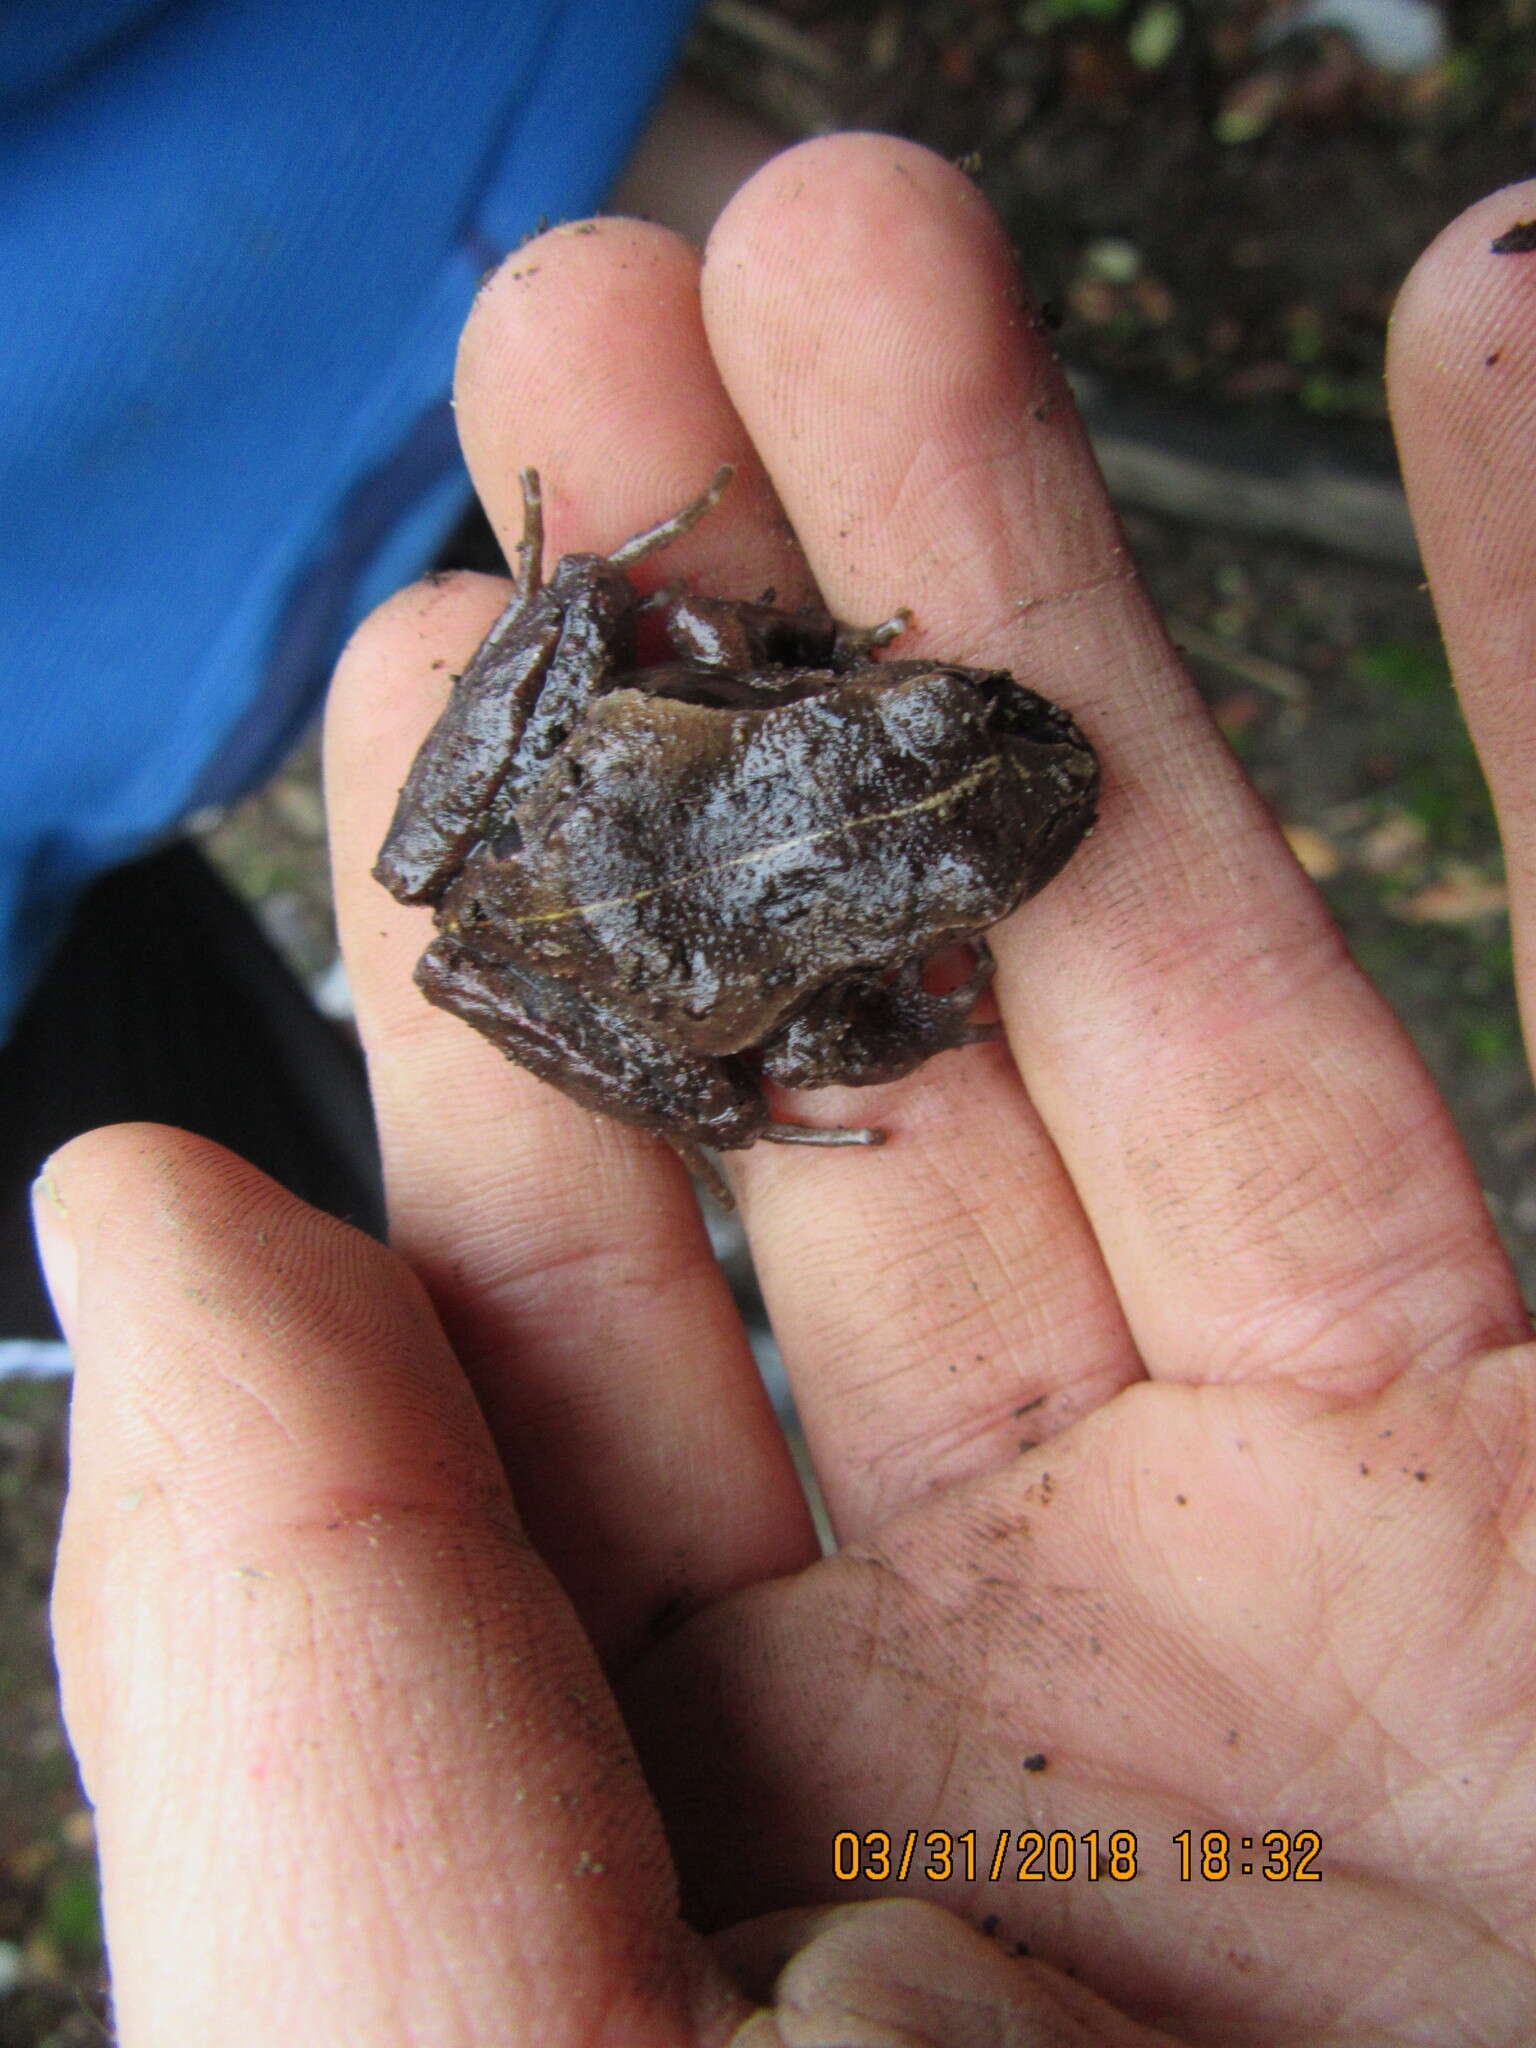 Image of Chiloe Island Ground Frog